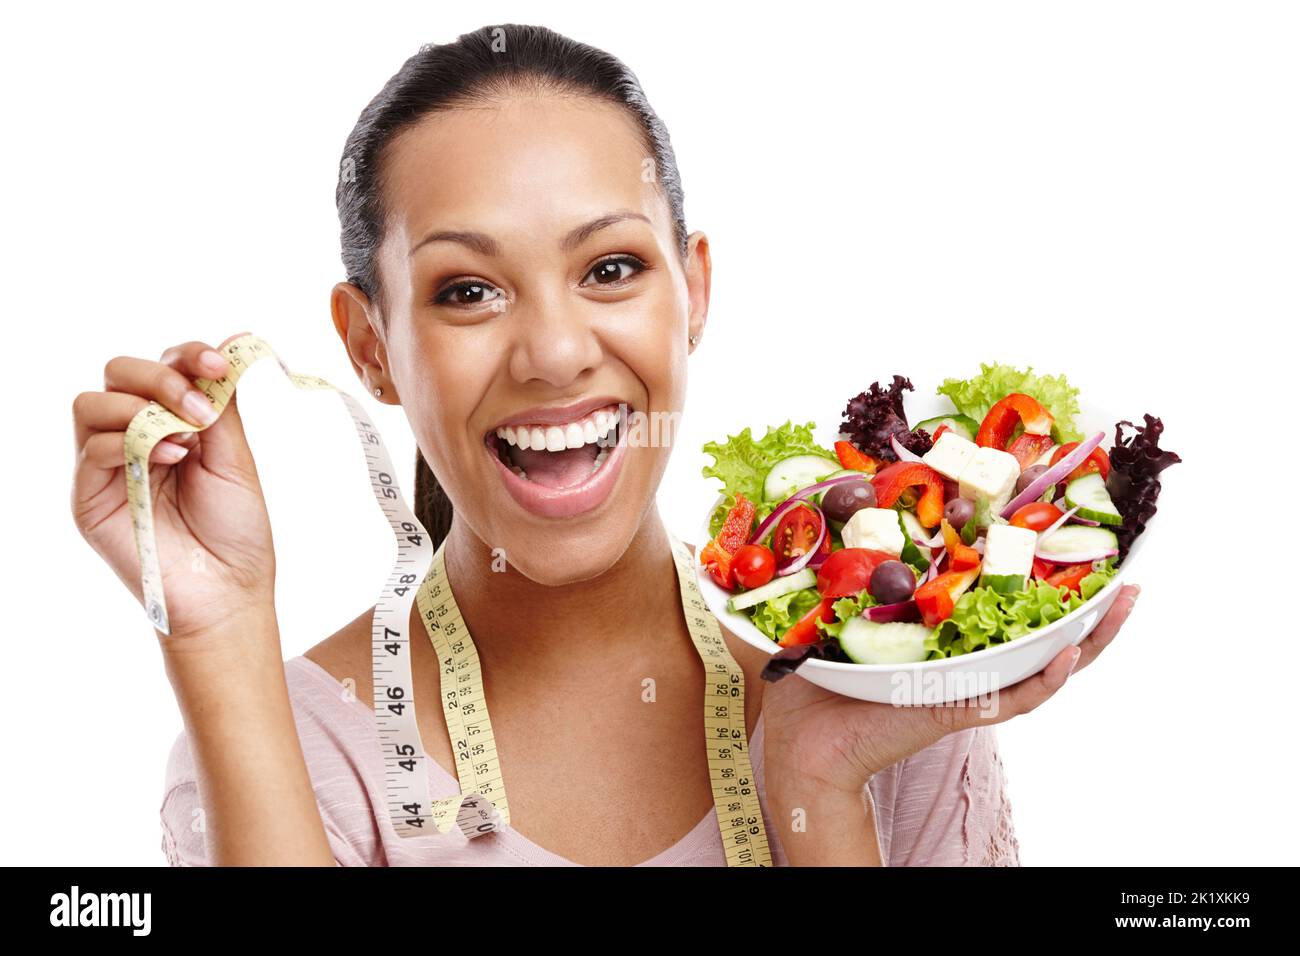 Voir les résultats. Portrait d'une jeune femme attrayante tenant un mètre ruban et un bol de salade. Banque D'Images